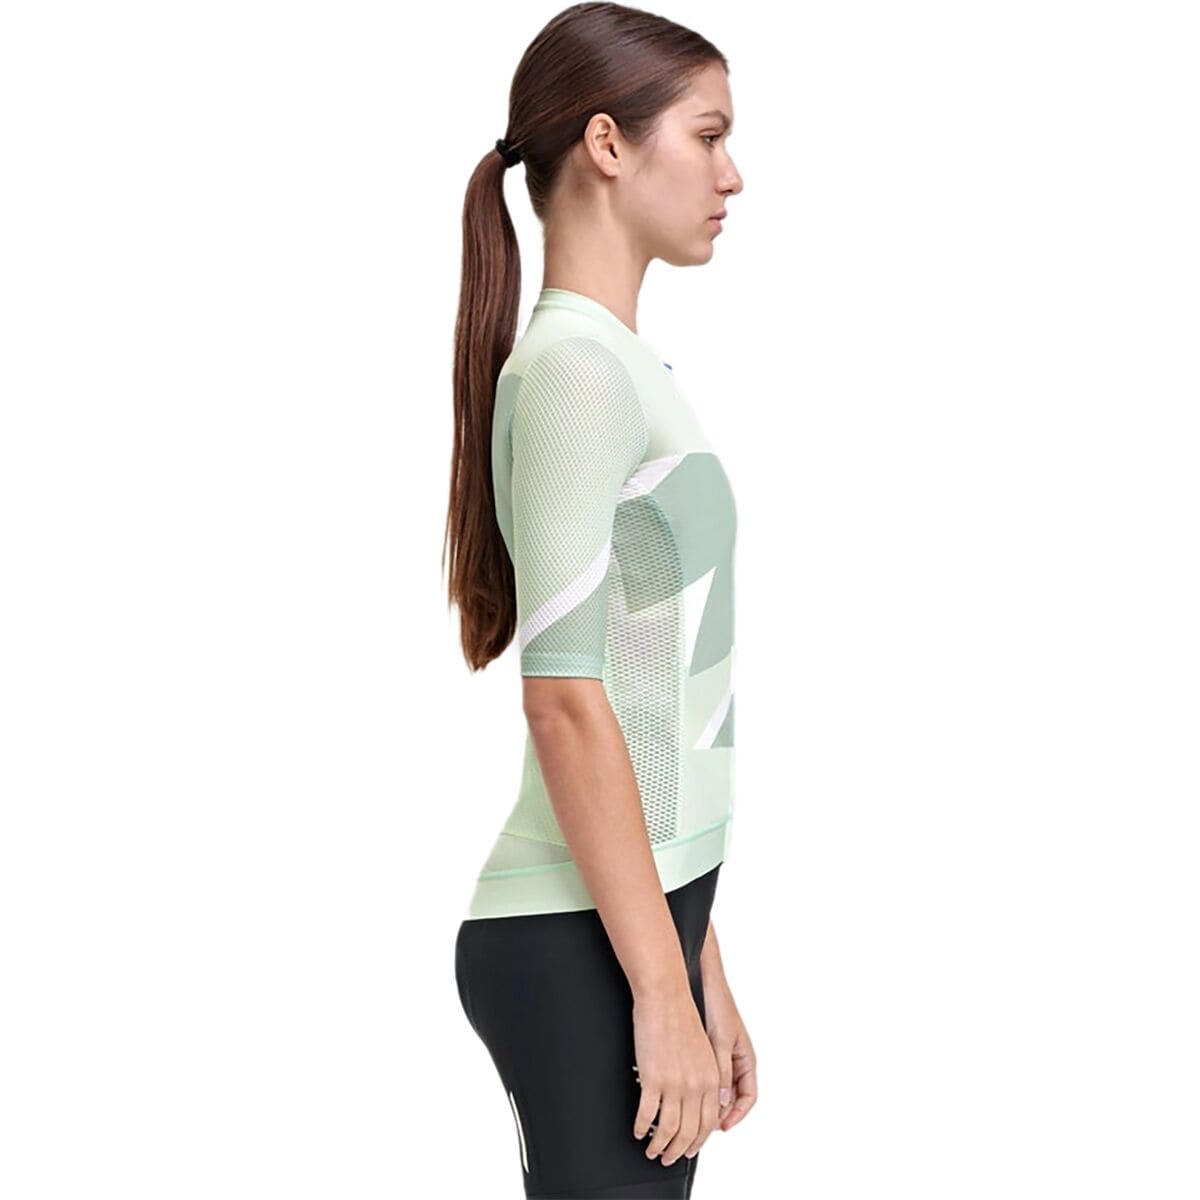 MAAP Evolve 3D Pro Air Short-Sleeve Jersey - Women's - Women